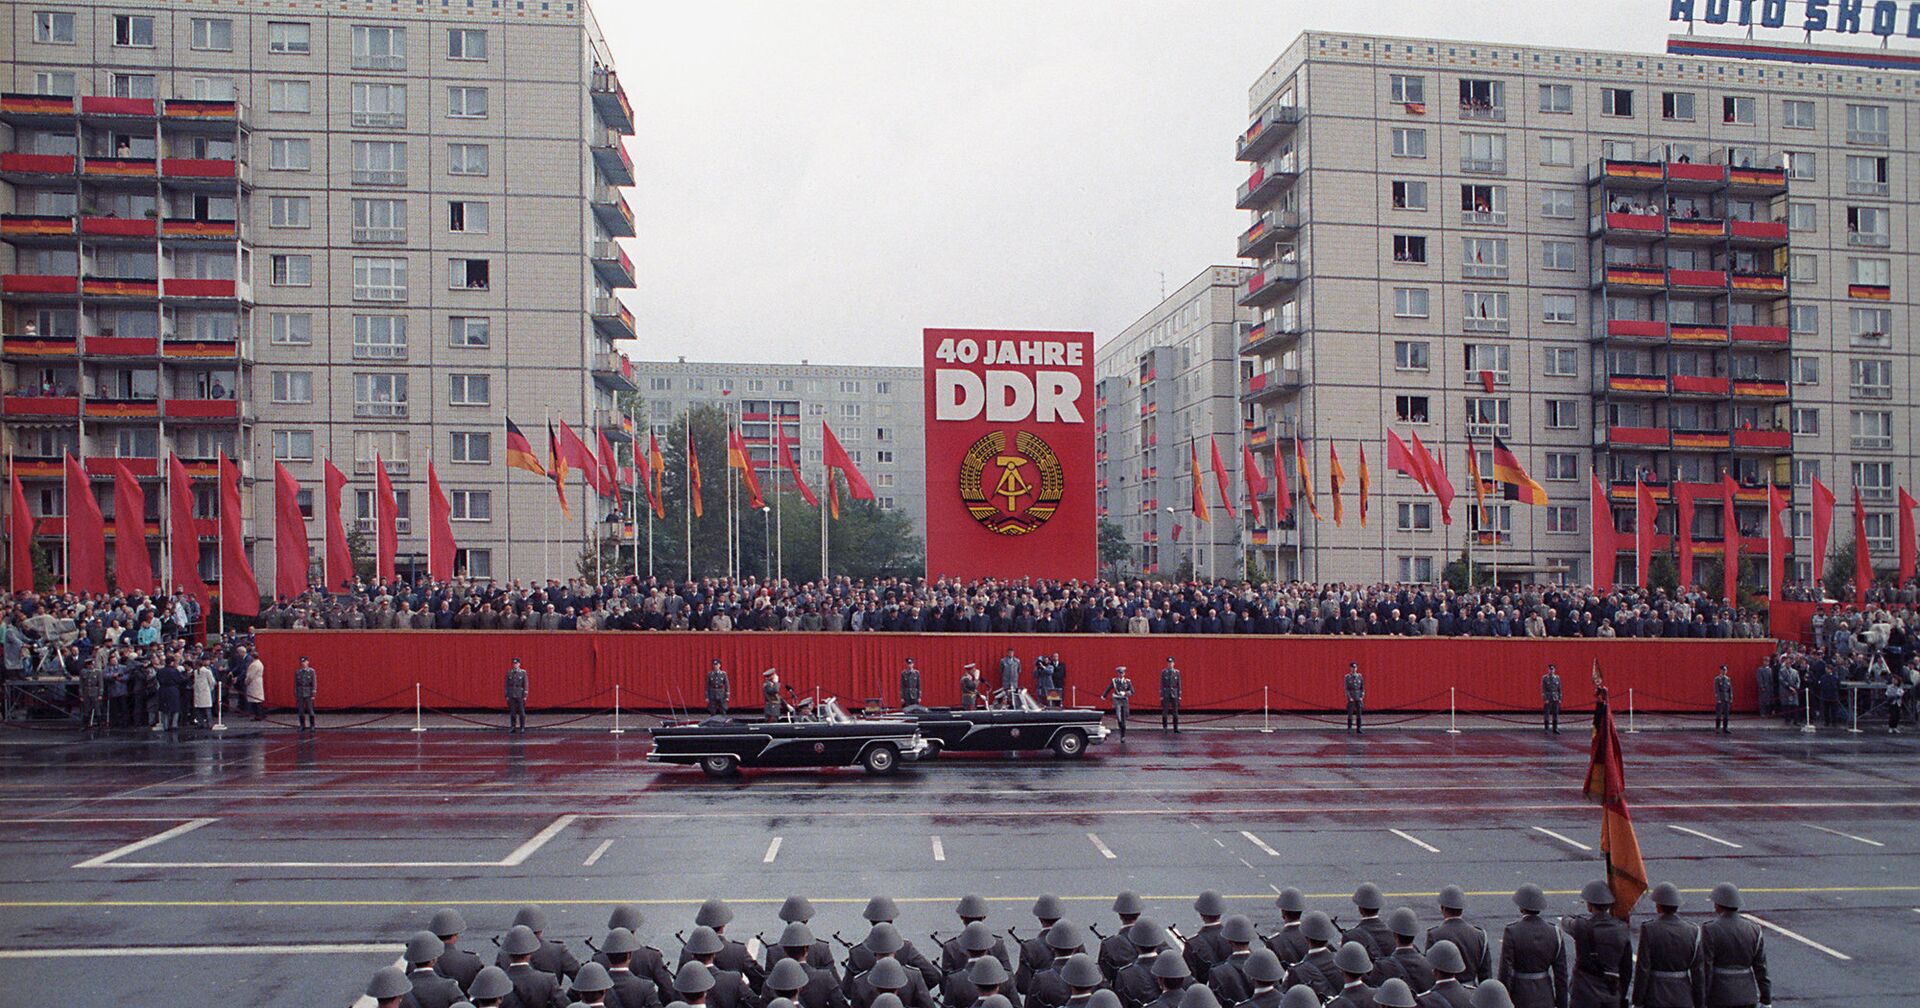 Военный парад в честь 40-летия образования Германской Демократической Республики - ИноСМИ, 1920, 22.04.2021